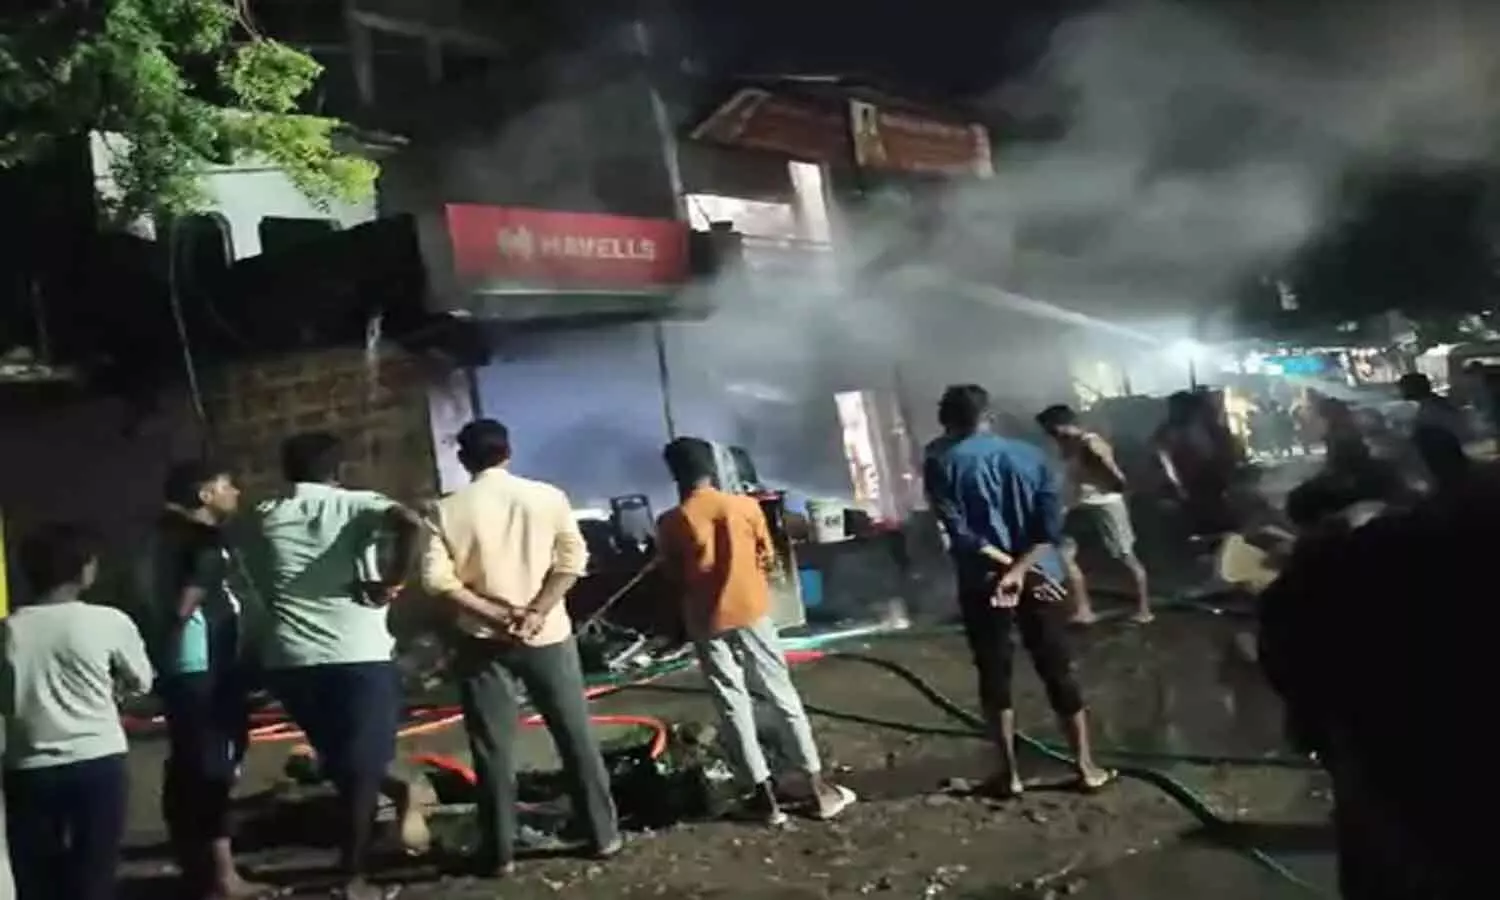 रीवा जिले के इलेक्ट्रॉनिक शोरूम में भड़की आग, धू-धूकर जल गया सामान, लाखों का हुआ नुकसान